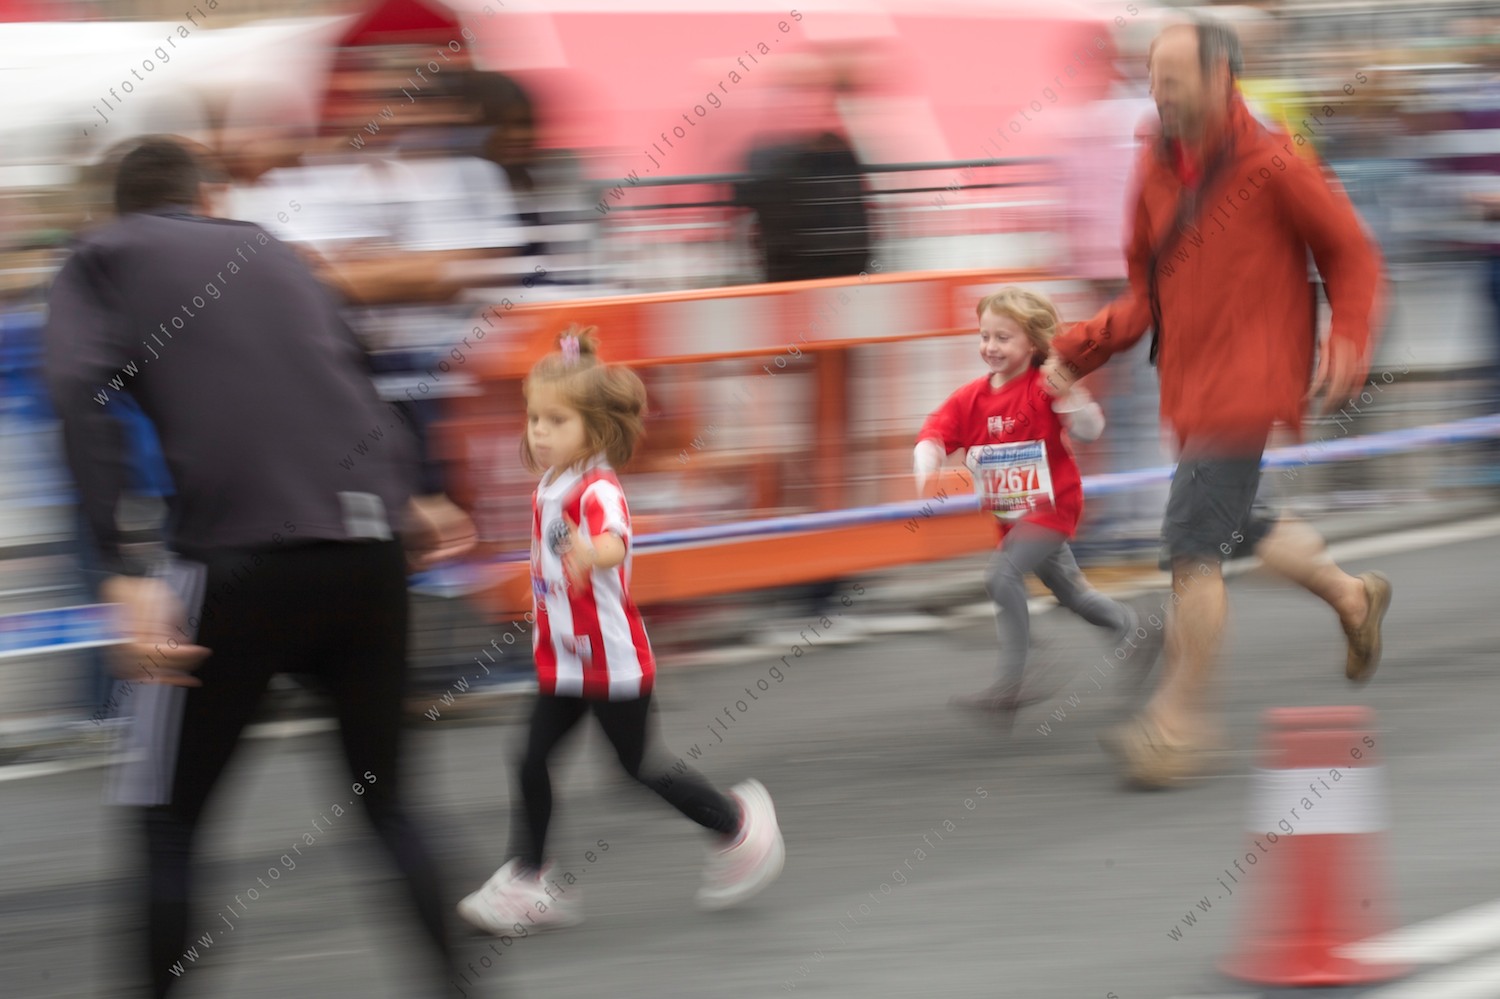 Aste Nagusia de Bilbao, barrido de niñas corriendo en la carrera urbana